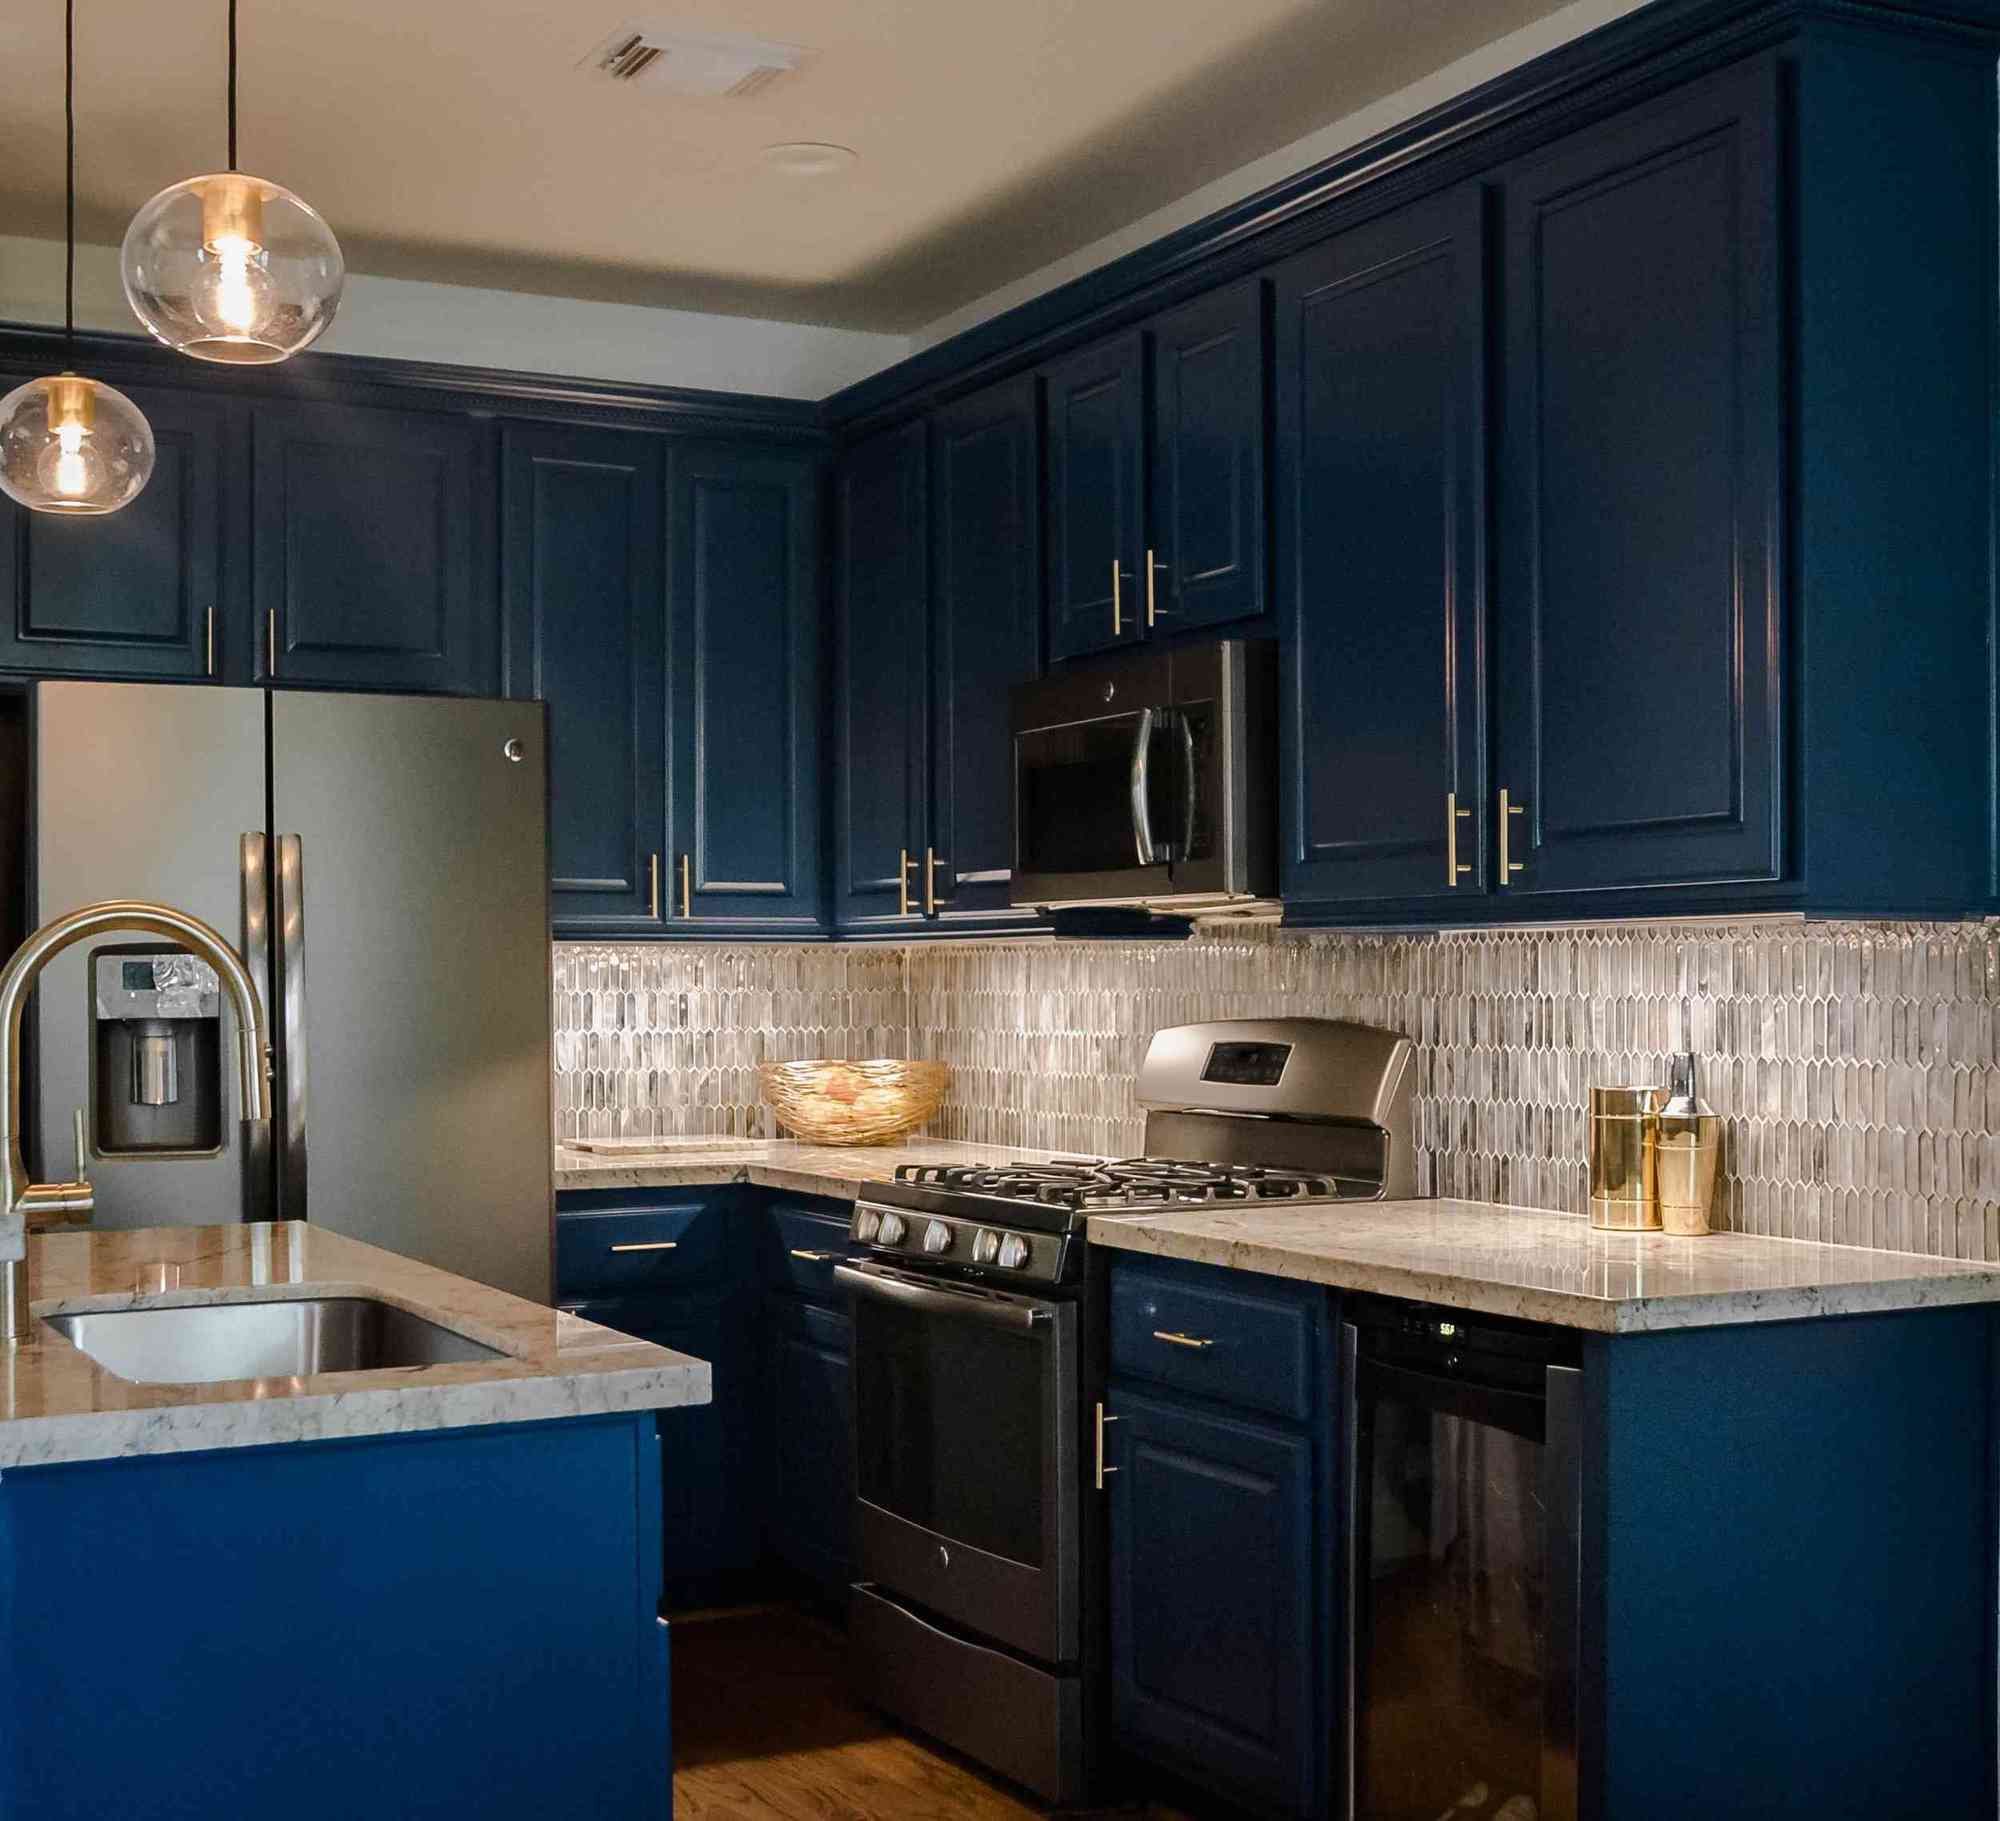 Biến hóa căn bếp gia đình từ phong cách đến không gian chỉ với gam màu xanh dương - Ảnh 9.